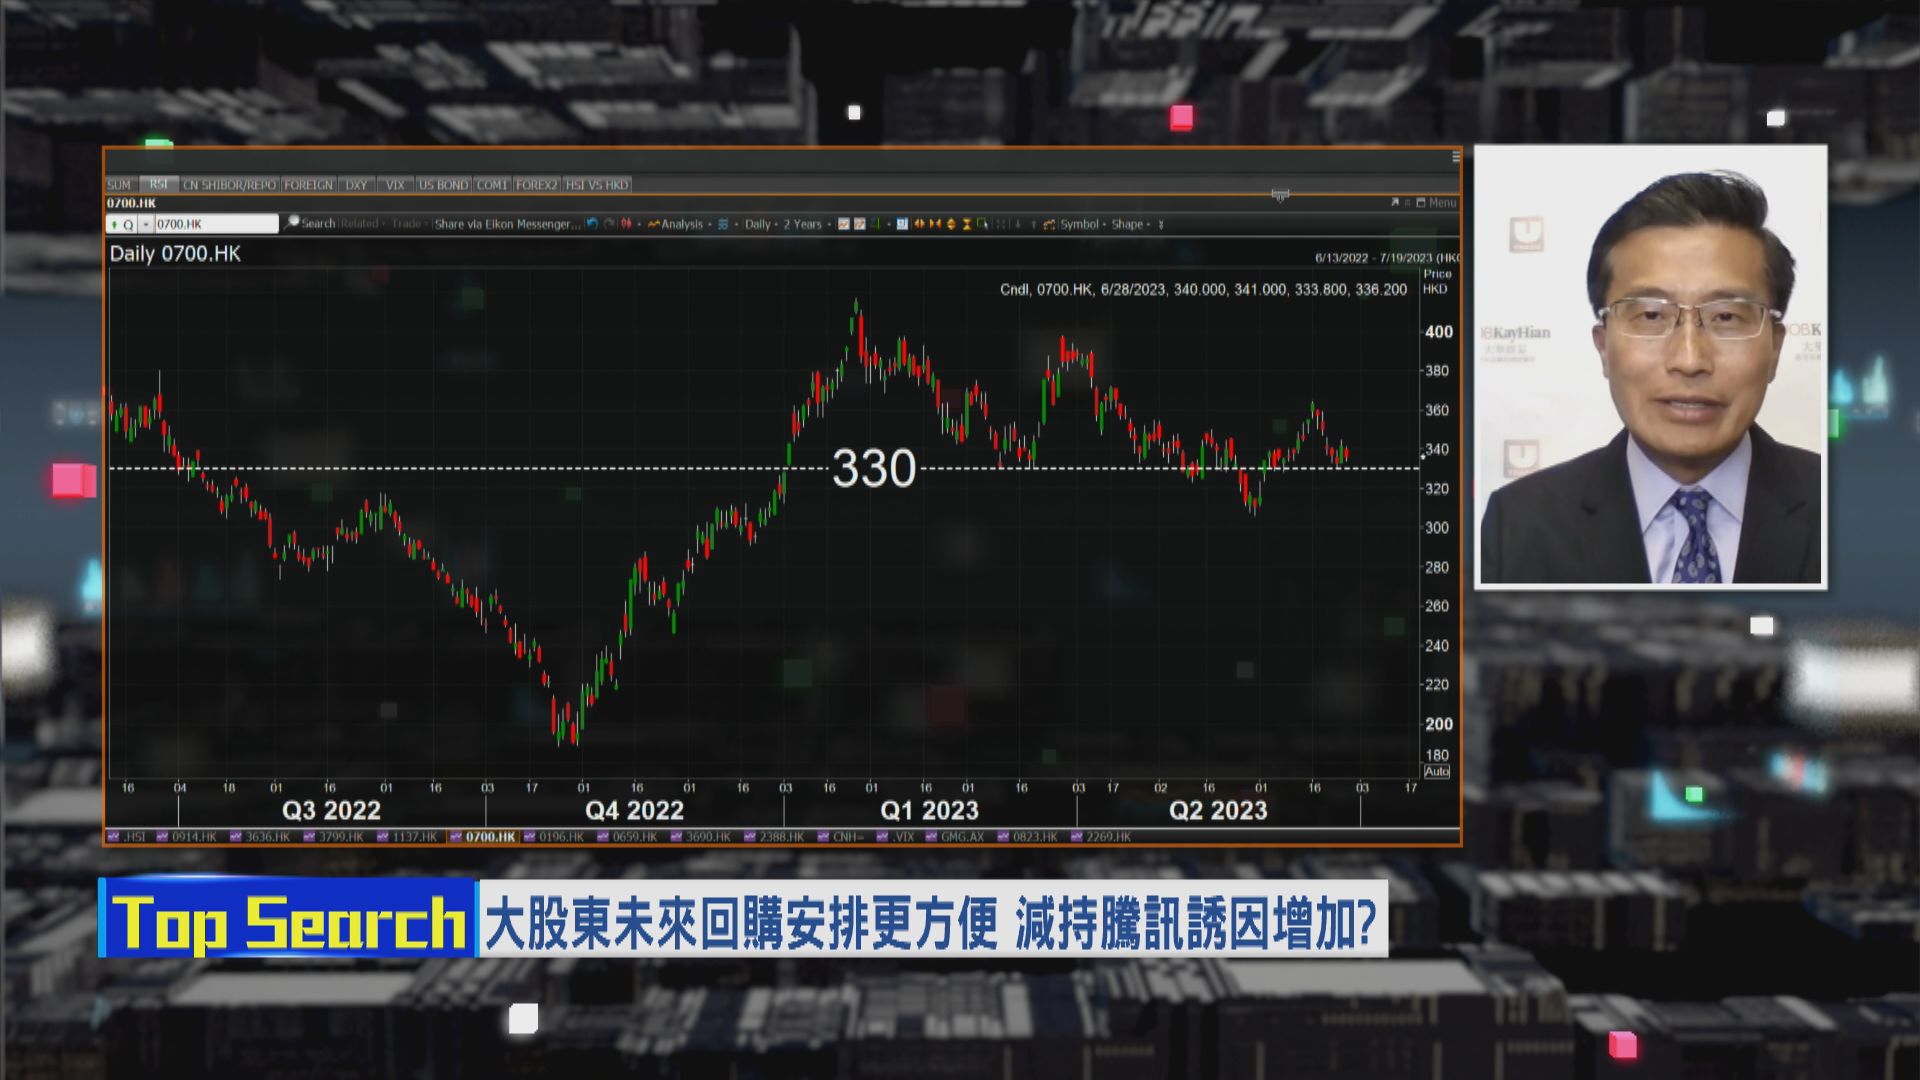 【財經TOP SEARCH】Naspers消息對騰訊股價影響微